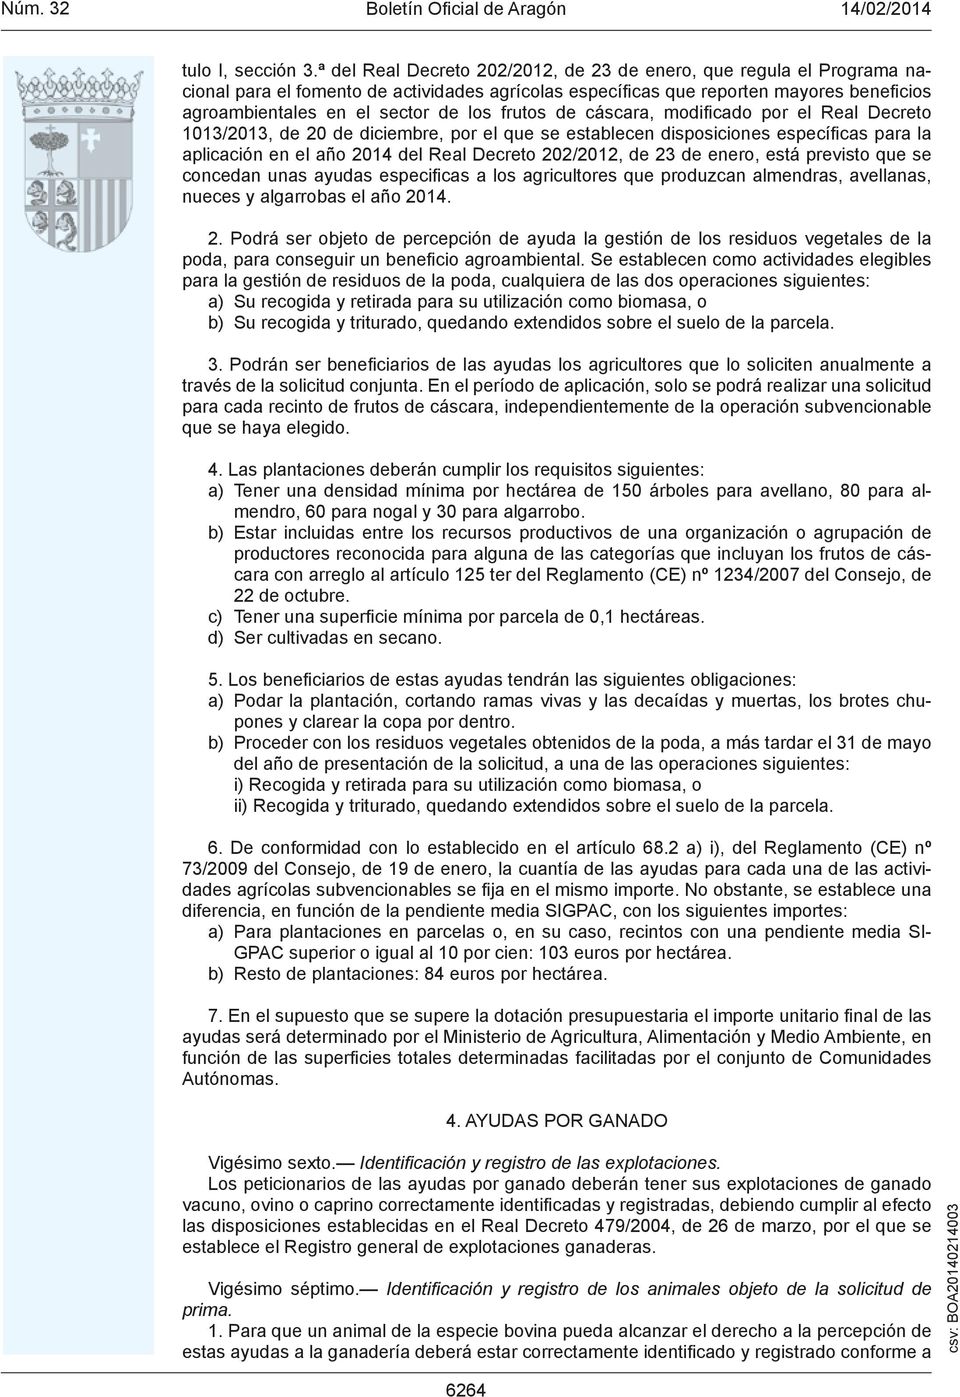 frutos de cáscara, modificado por el Real Decreto 1013/2013, de 20 de diciembre, por el que se establecen disposiciones específicas para la aplicación en el año 2014 del Real Decreto 202/2012, de 23